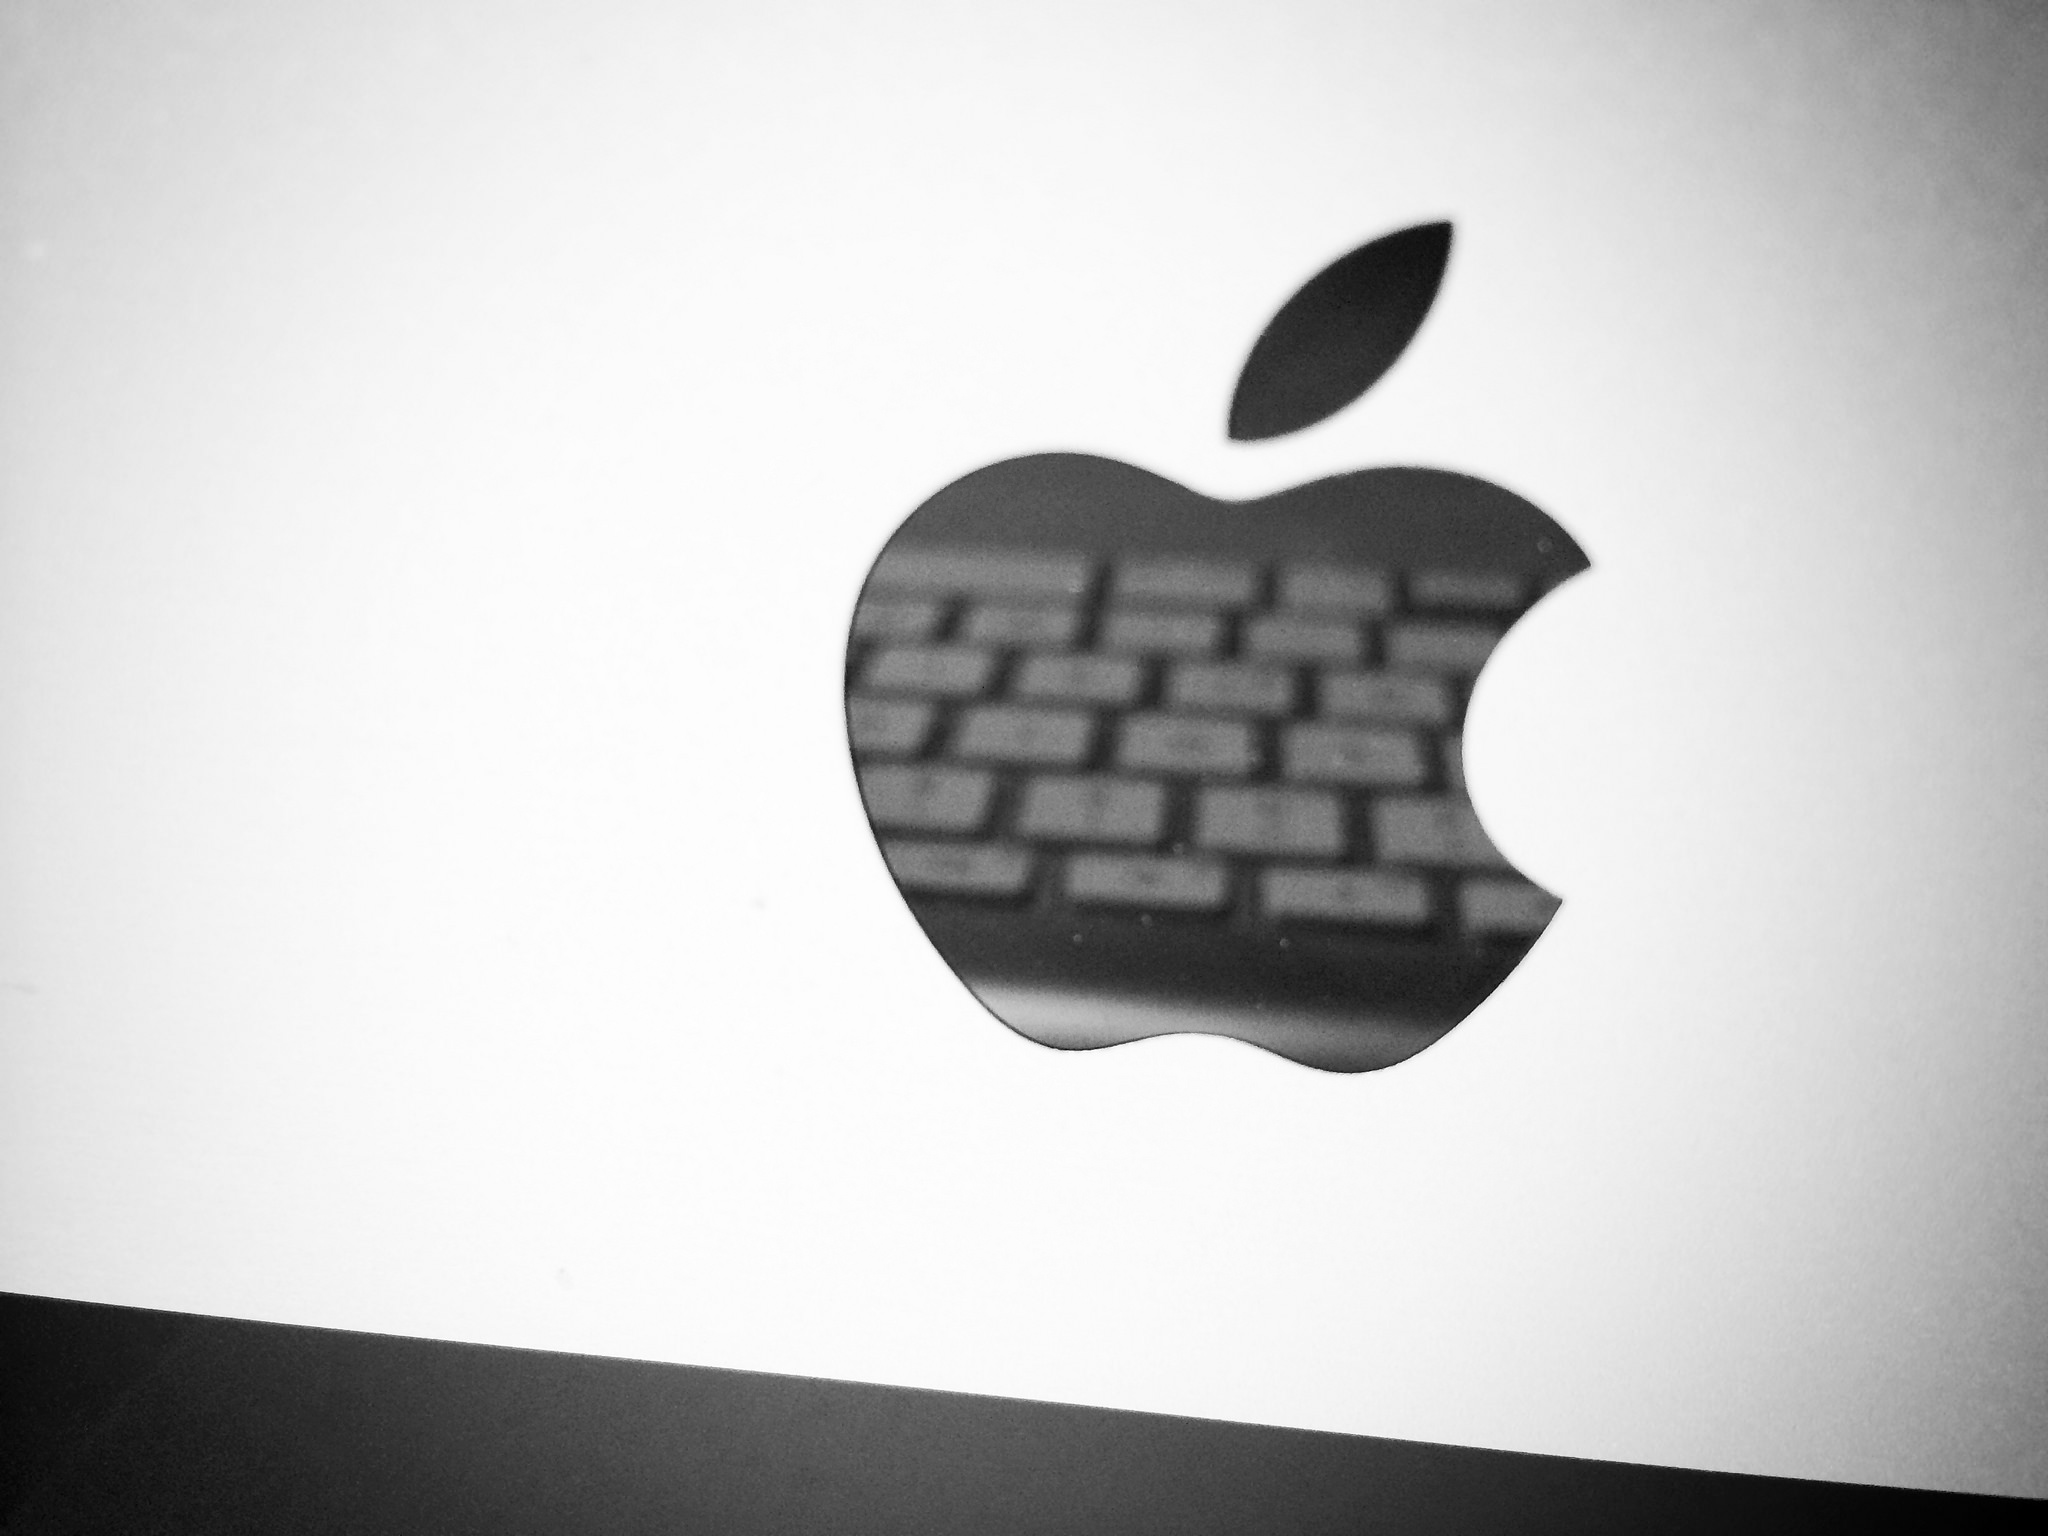 Offiziell: iPhone-Event am 12. September im Apple Park - Kommt das iPhone 8? 1